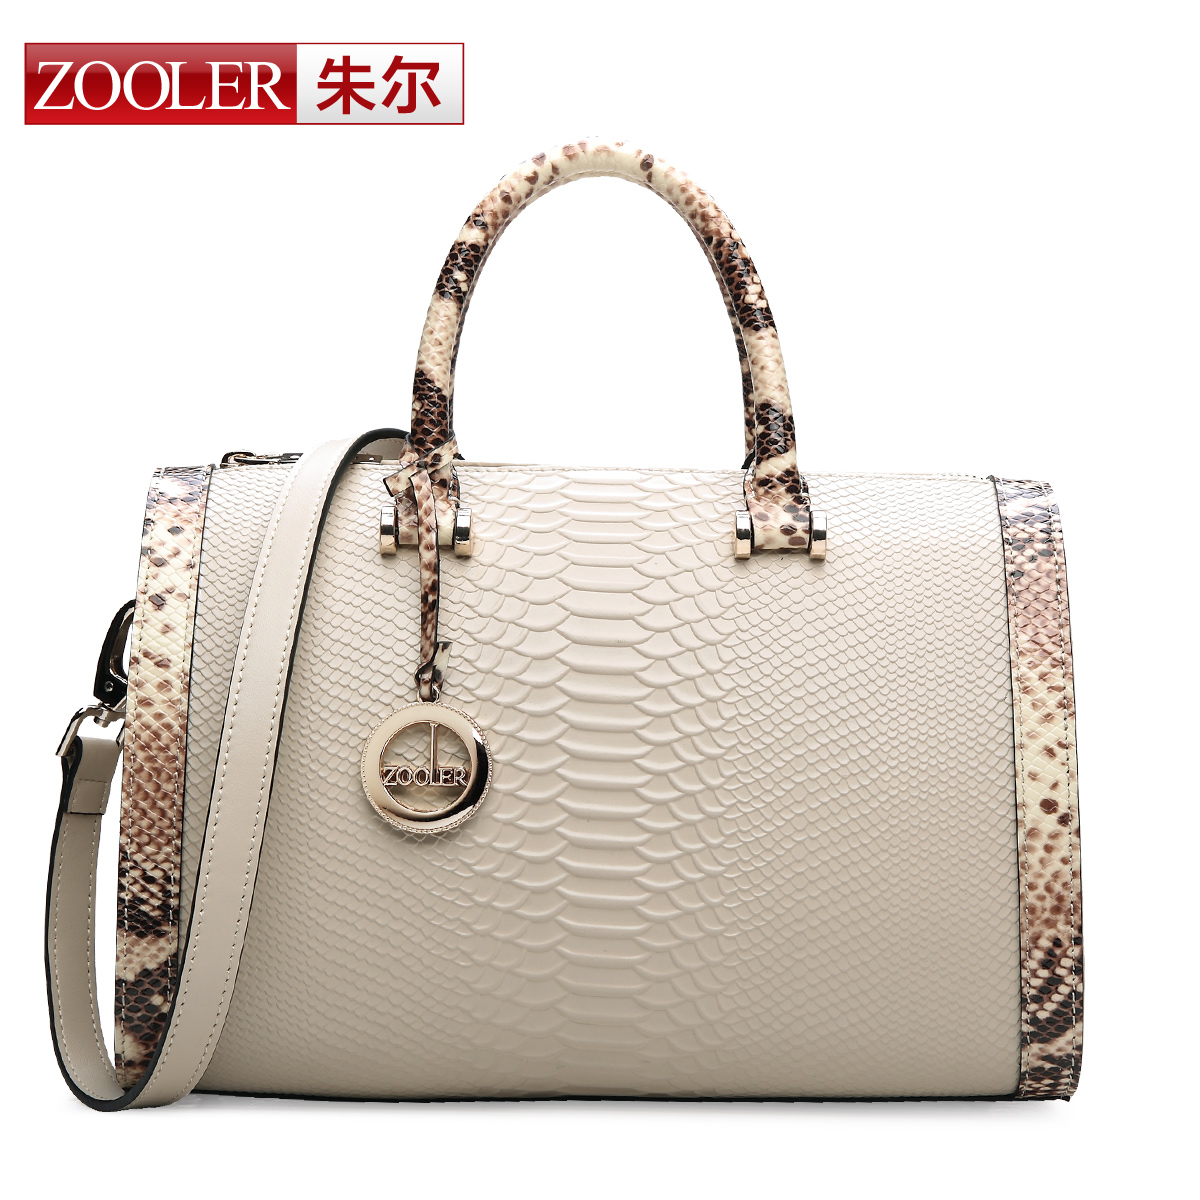 popular handbags for women, prada handbags sale usa